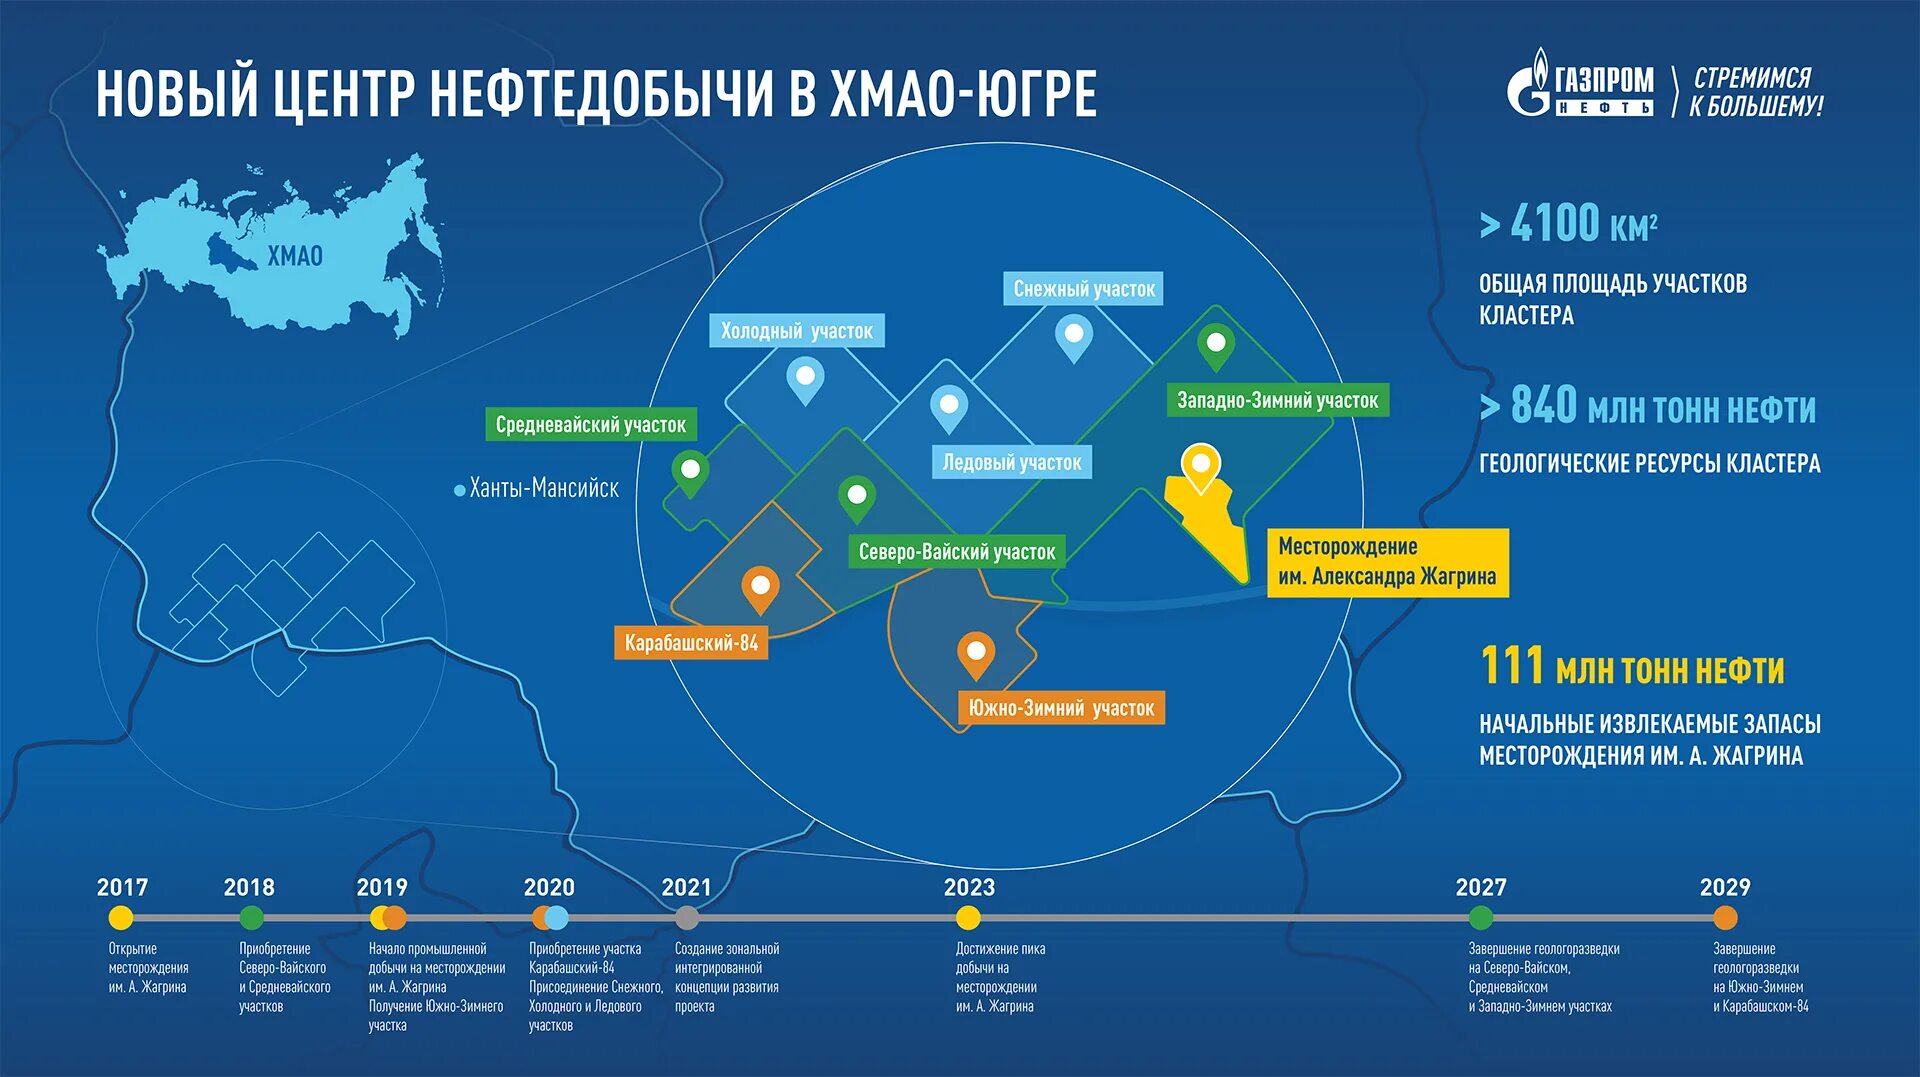 Центры добычи нефти и газа. Месторождения Газпромнефть на карте. Месторождения Газпрома на карте. Месторождения Газпромнефти. Нефтегазовый кластер.